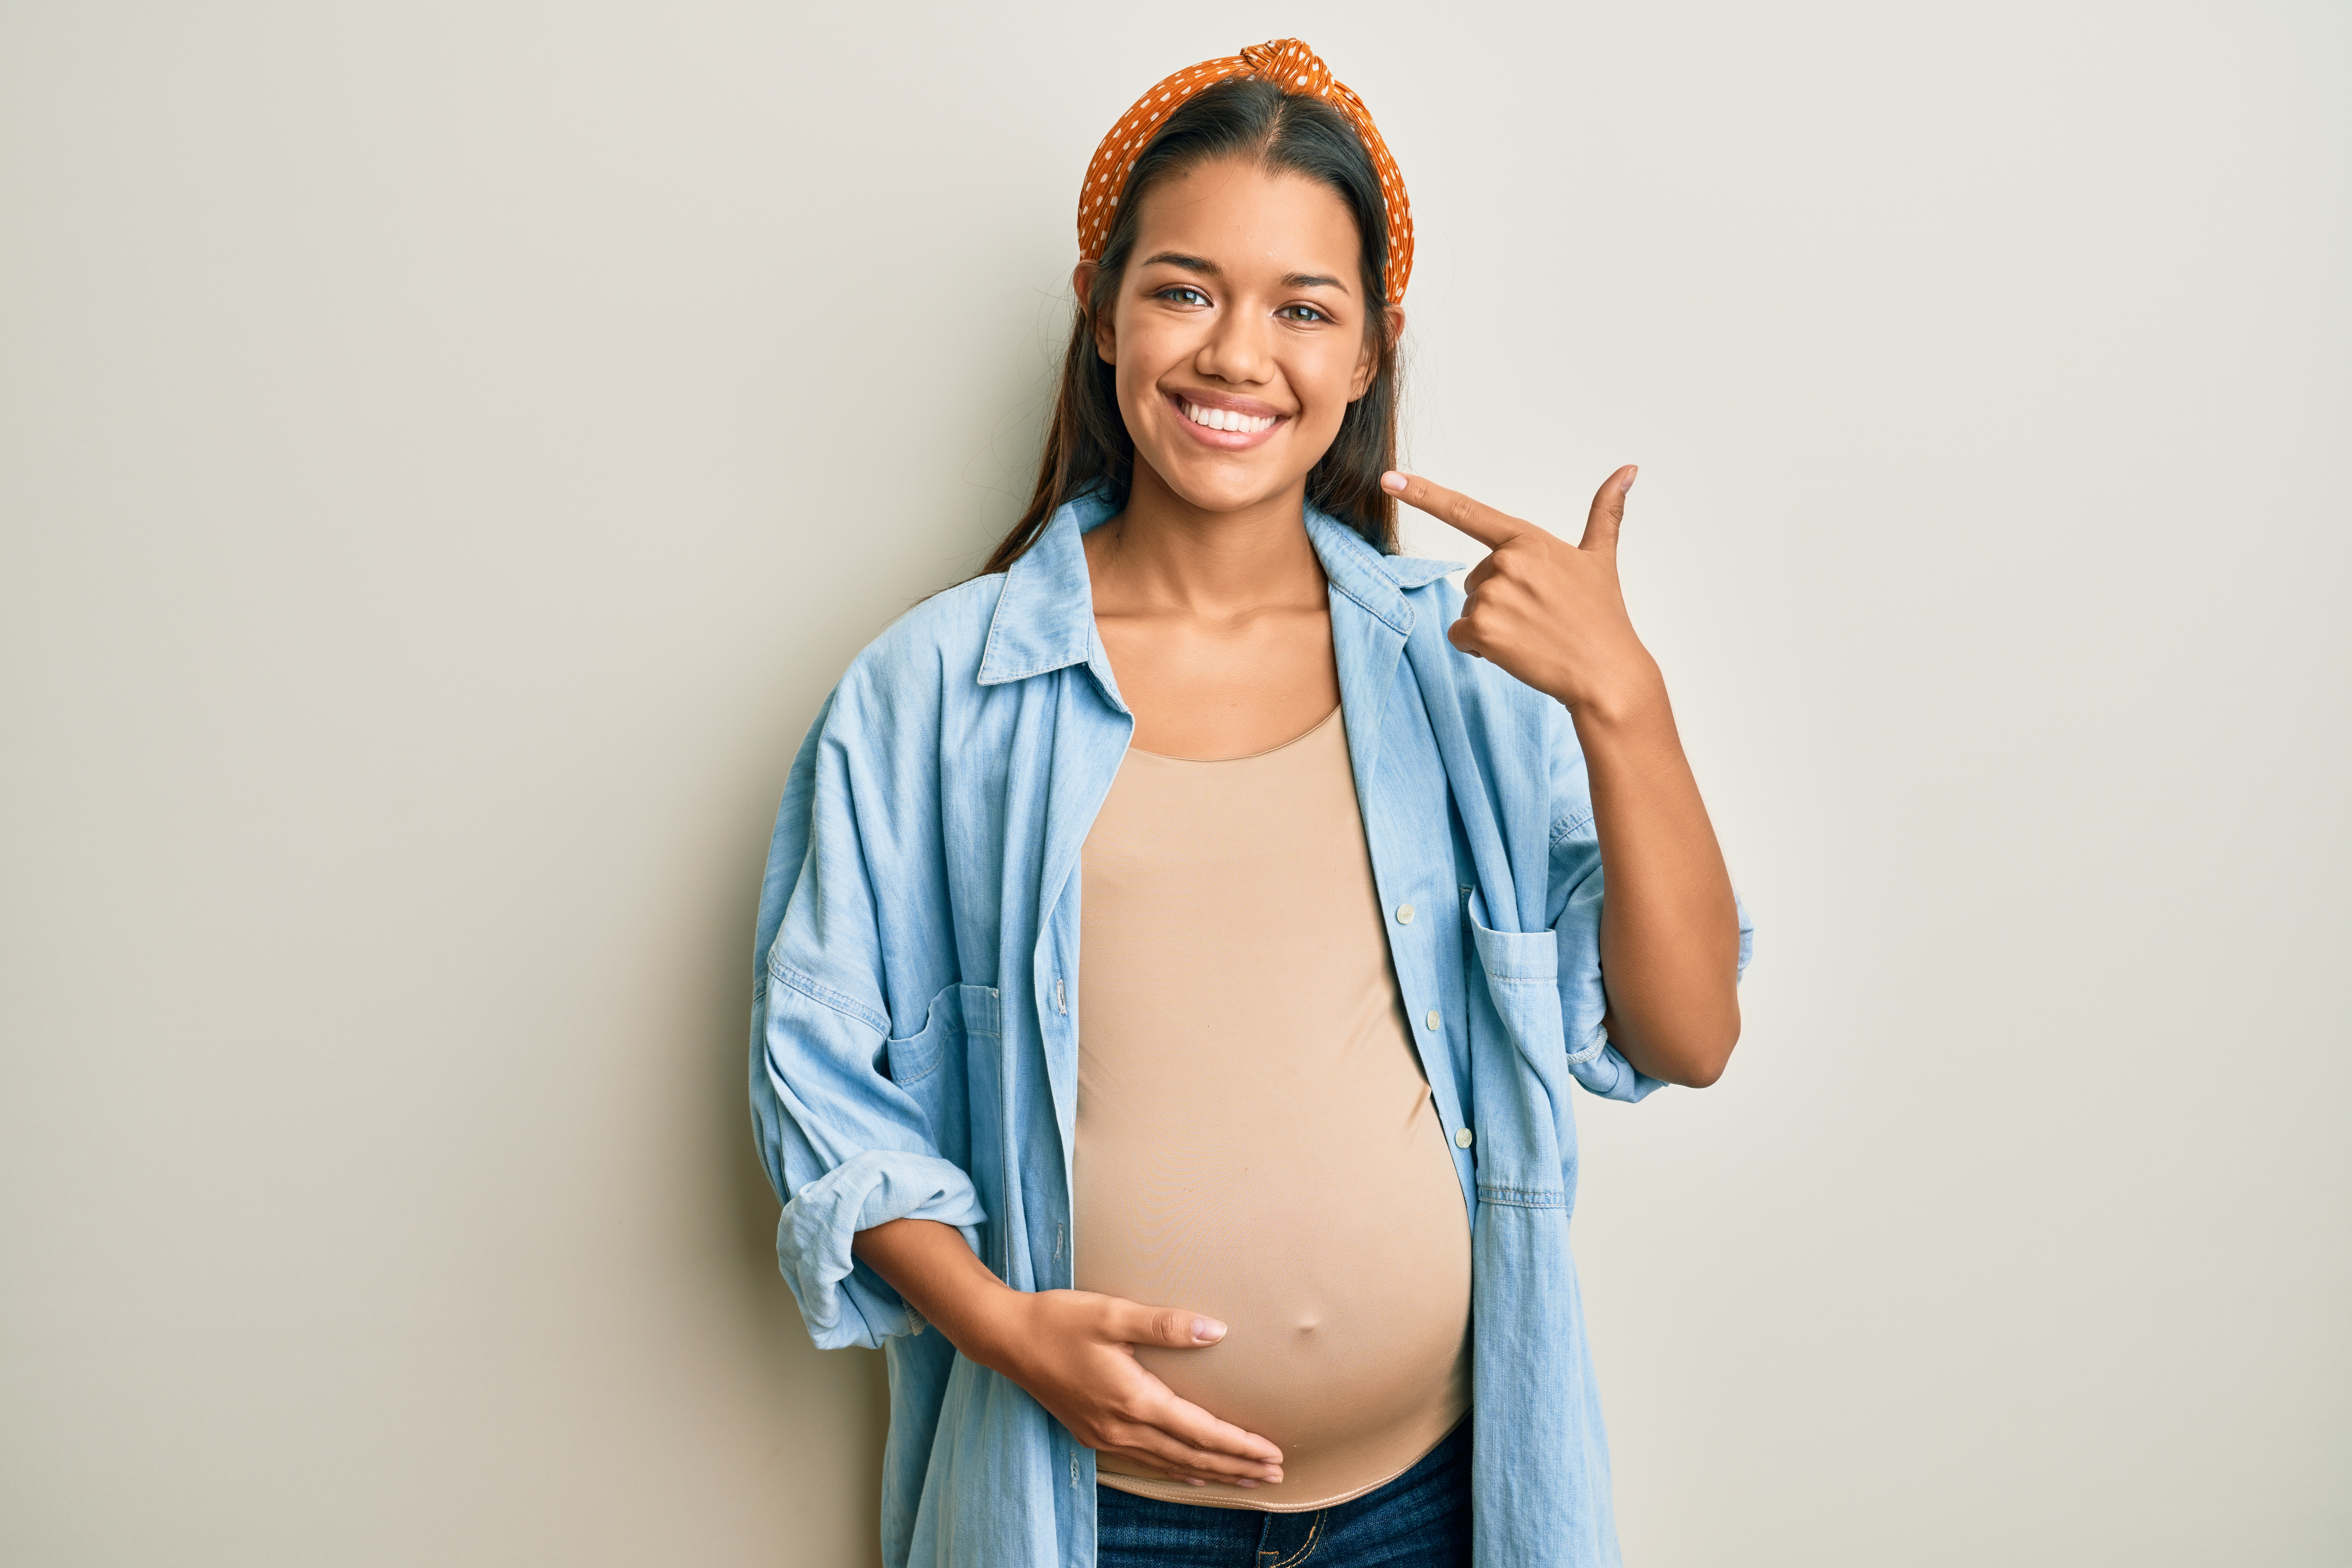 Беременная женщина держится за живот, показывая на свою улыбку.